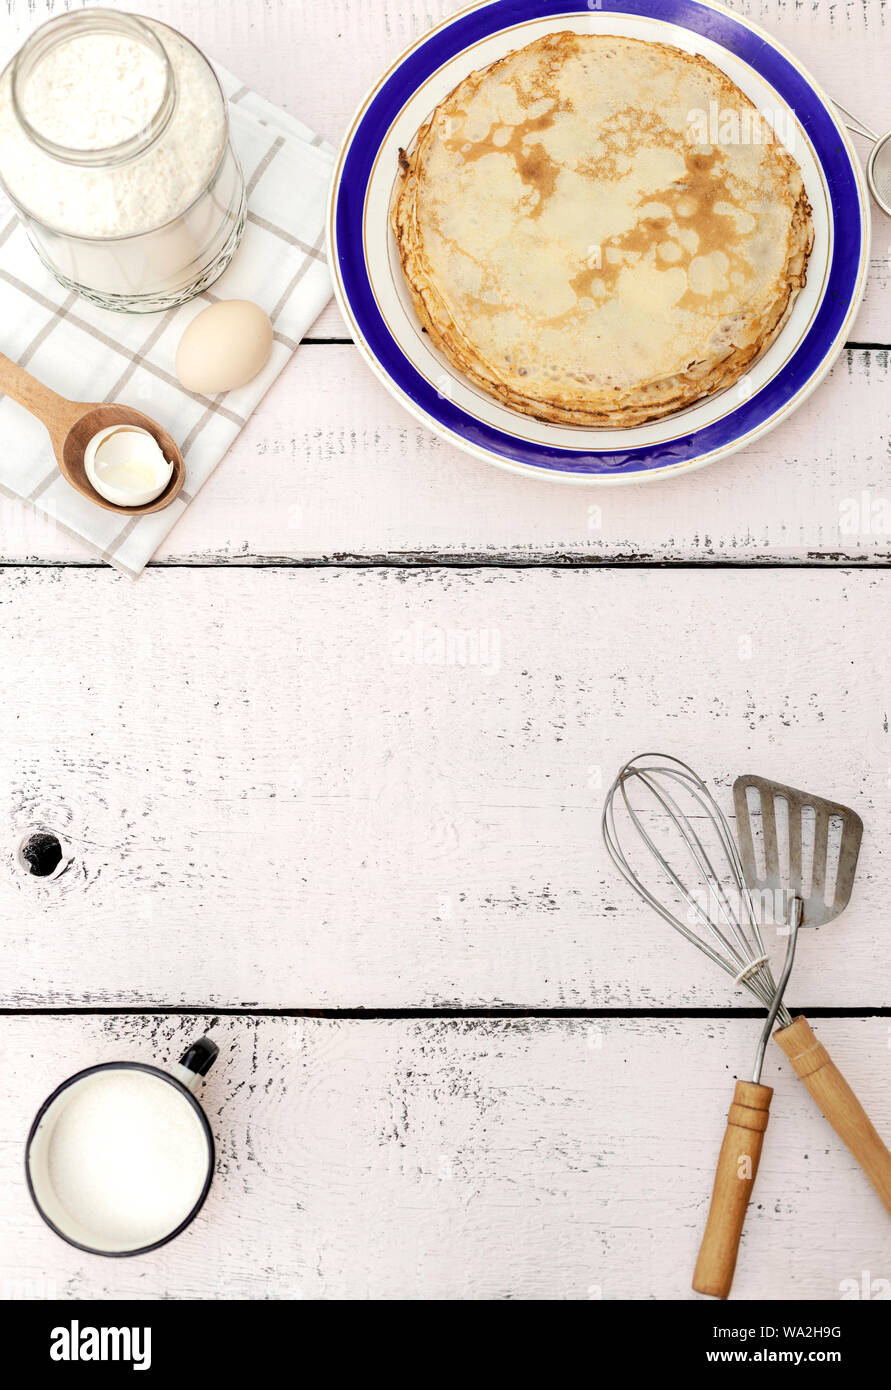 Kochen Pfannkuchen. Zutaten, Geschirr und Küchenutensilien für Pfannkuchen. Selektive konzentrieren. Stockfoto